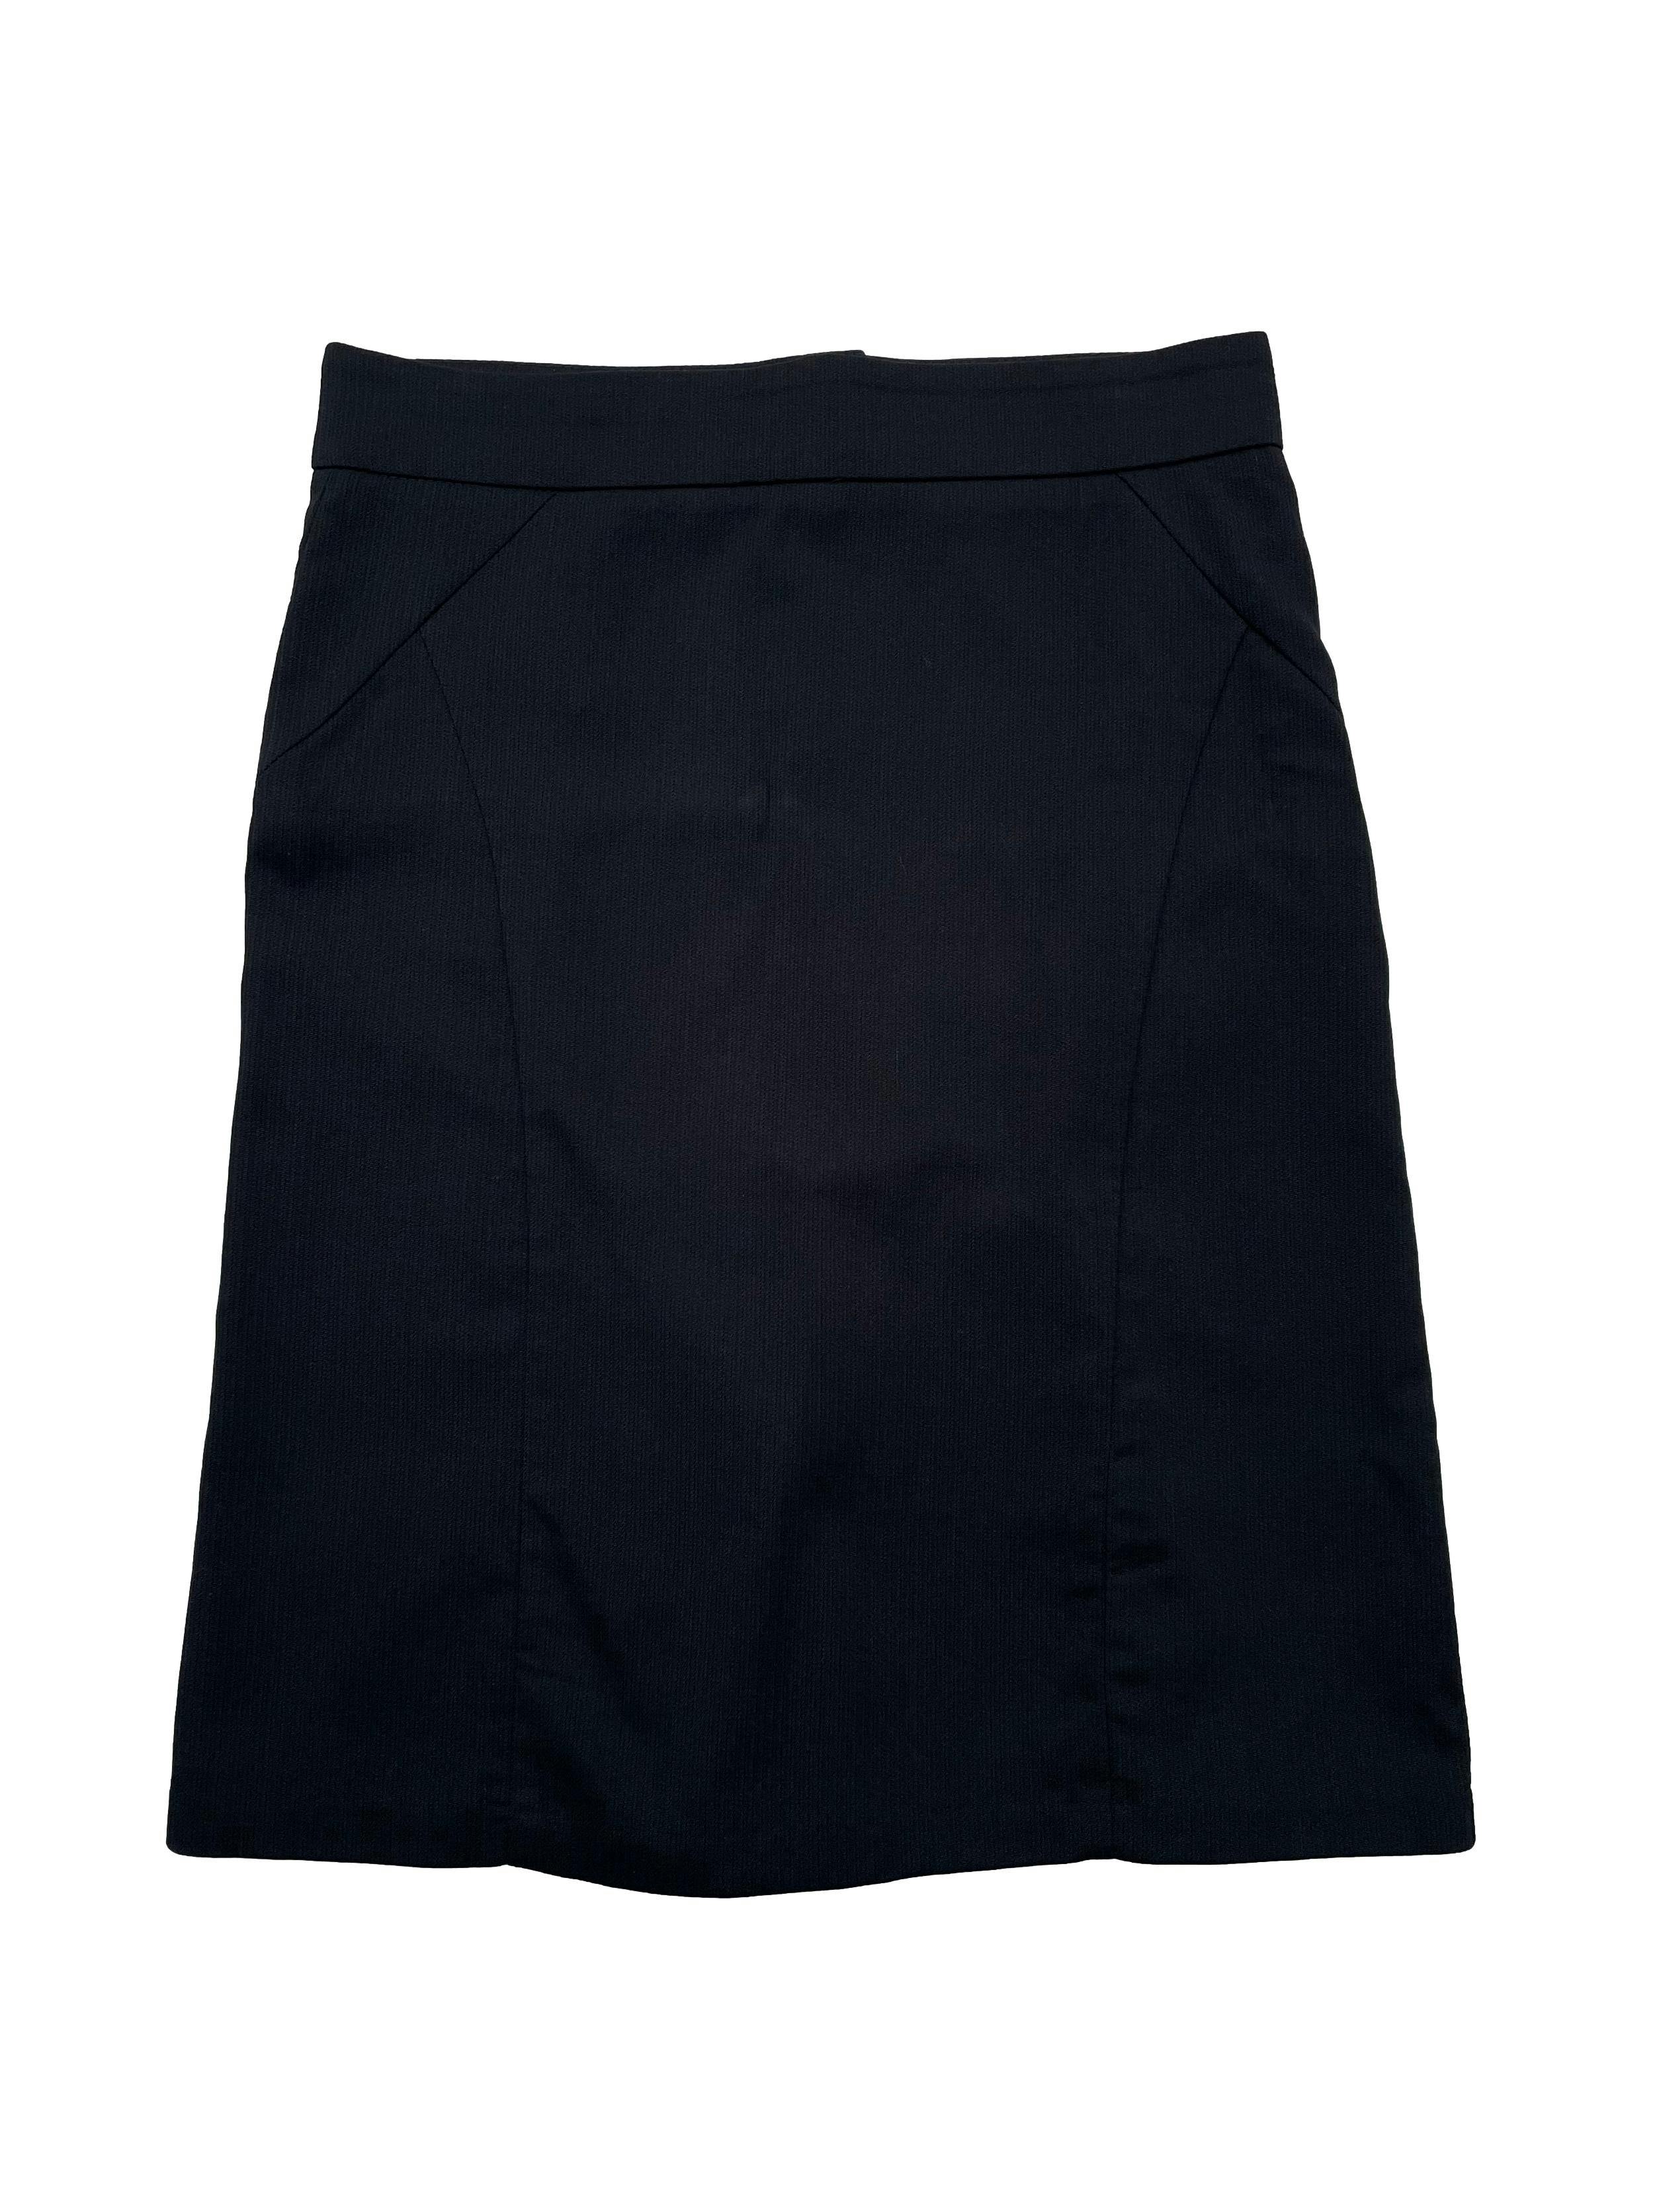 Falda formal Joaquim Miro negra con líneas al tono, botones y cierre posterior, zona trasera con corte sirena. Cintura 75cm Cadera 90cm Largo 57cm